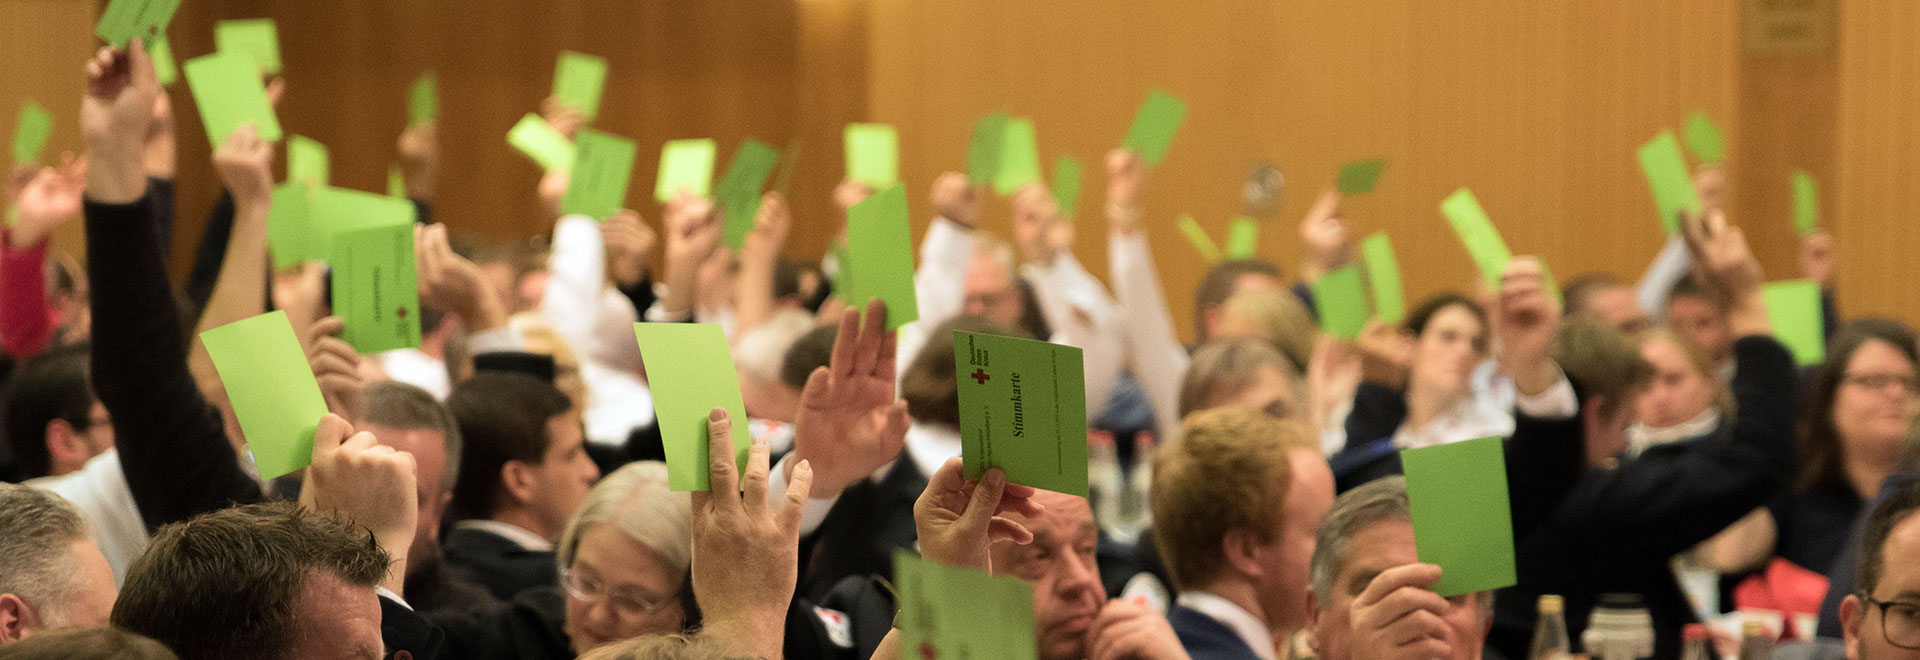 erhobene Hände mit grünen Stimmzetteln